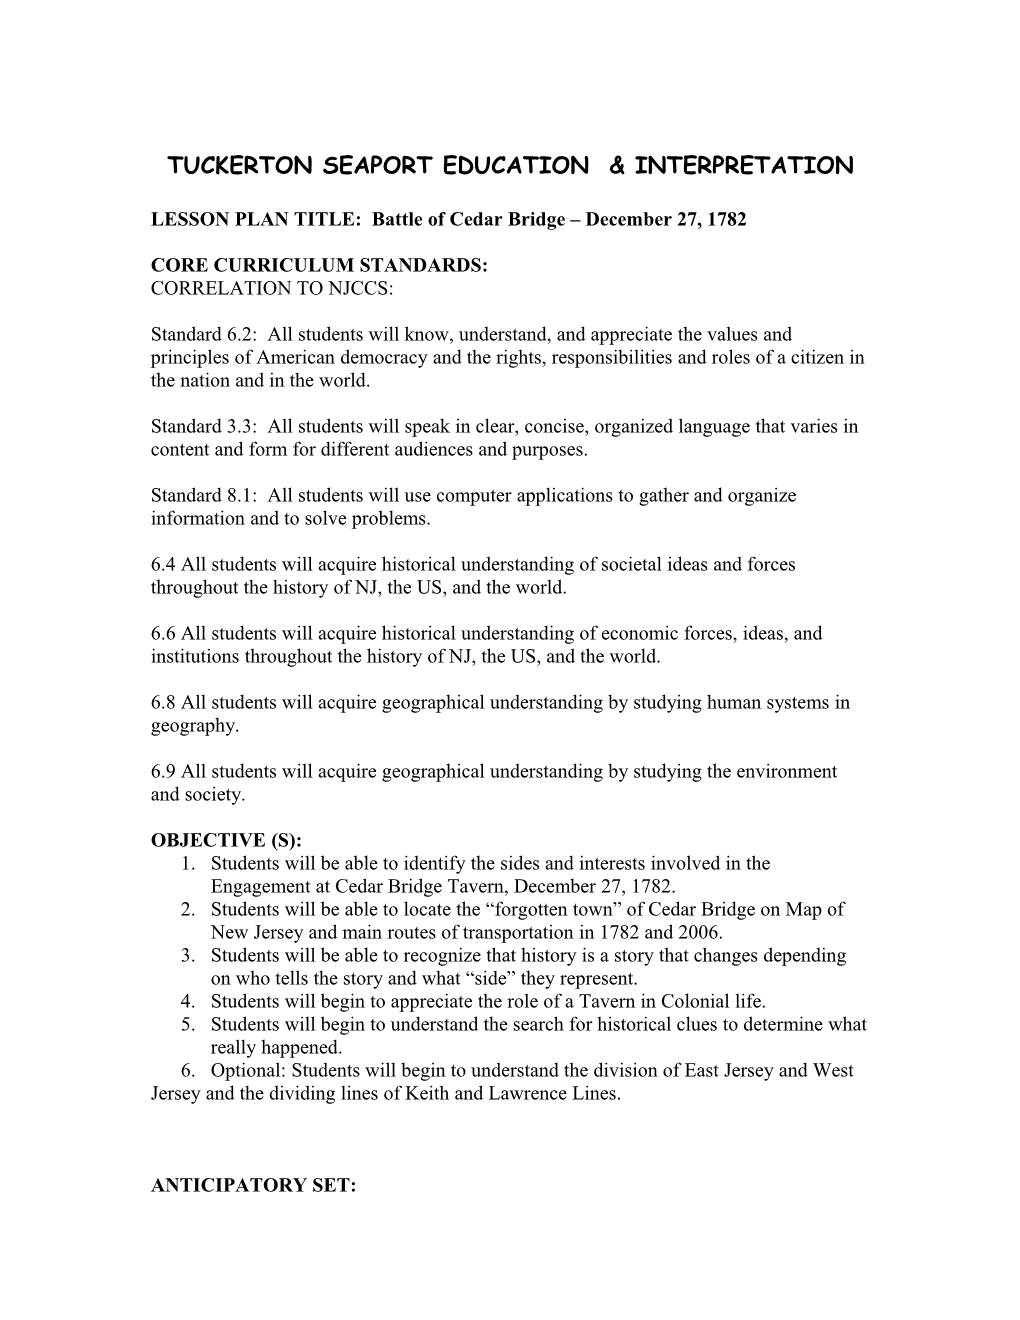 Tuckerton Seaport Education & Interpretation